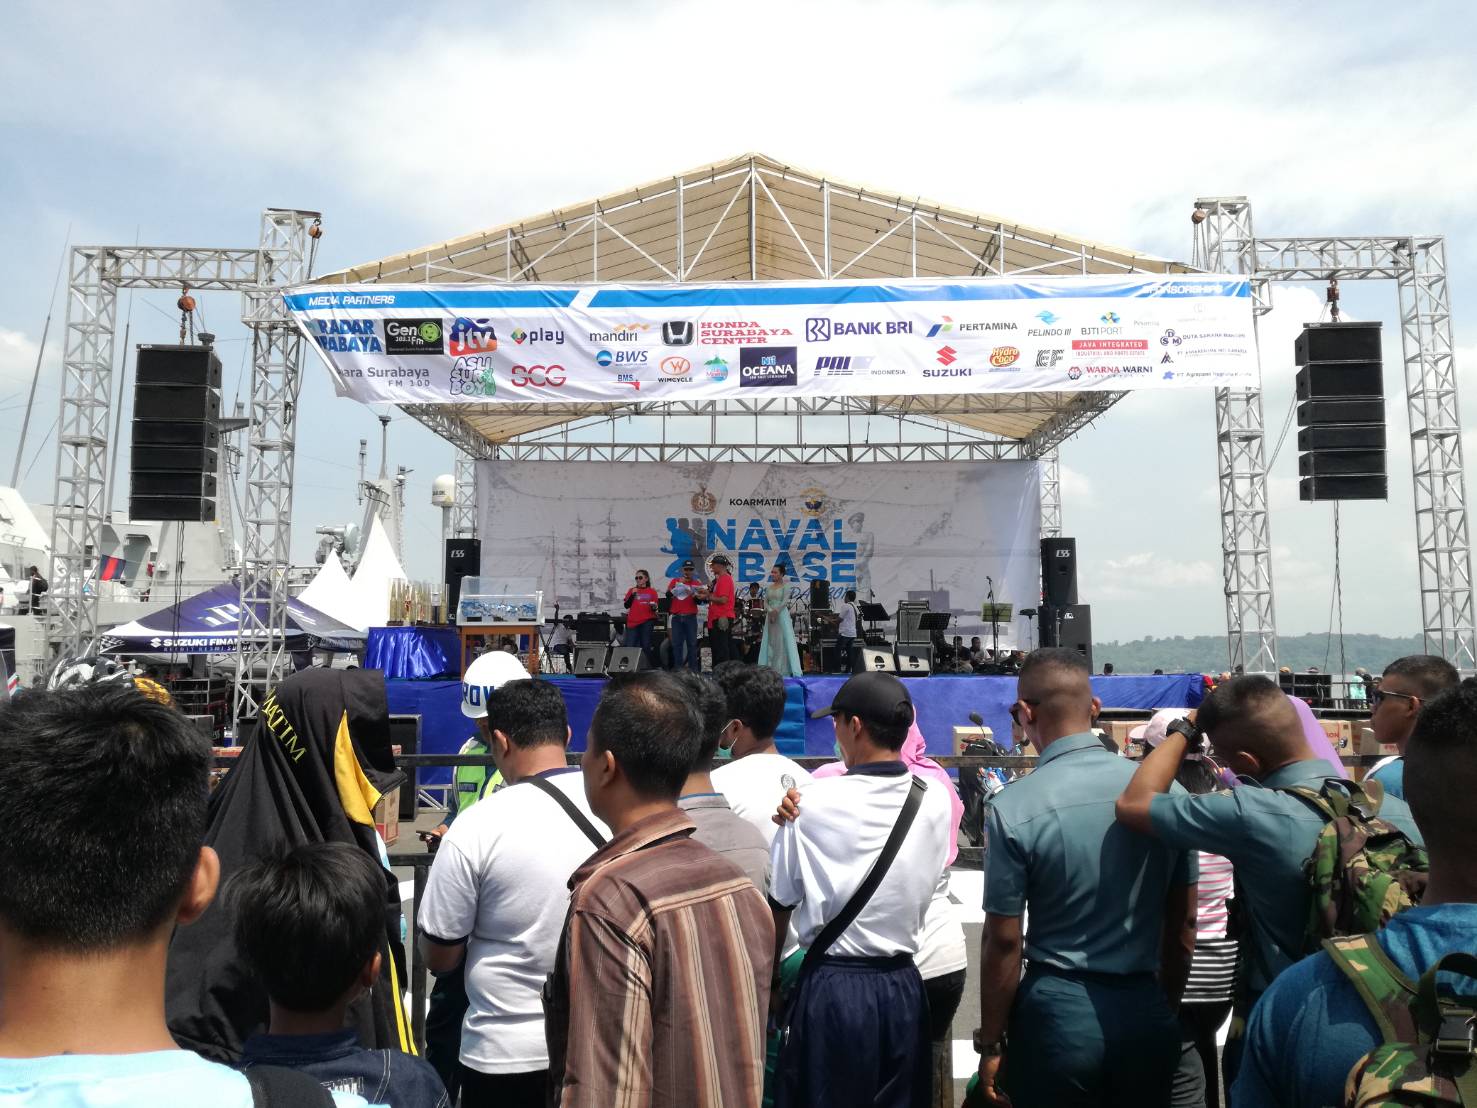 Fun Bike & Run 10K Bersama Masyarakat Surabaya di Naval Base Open Day 2017